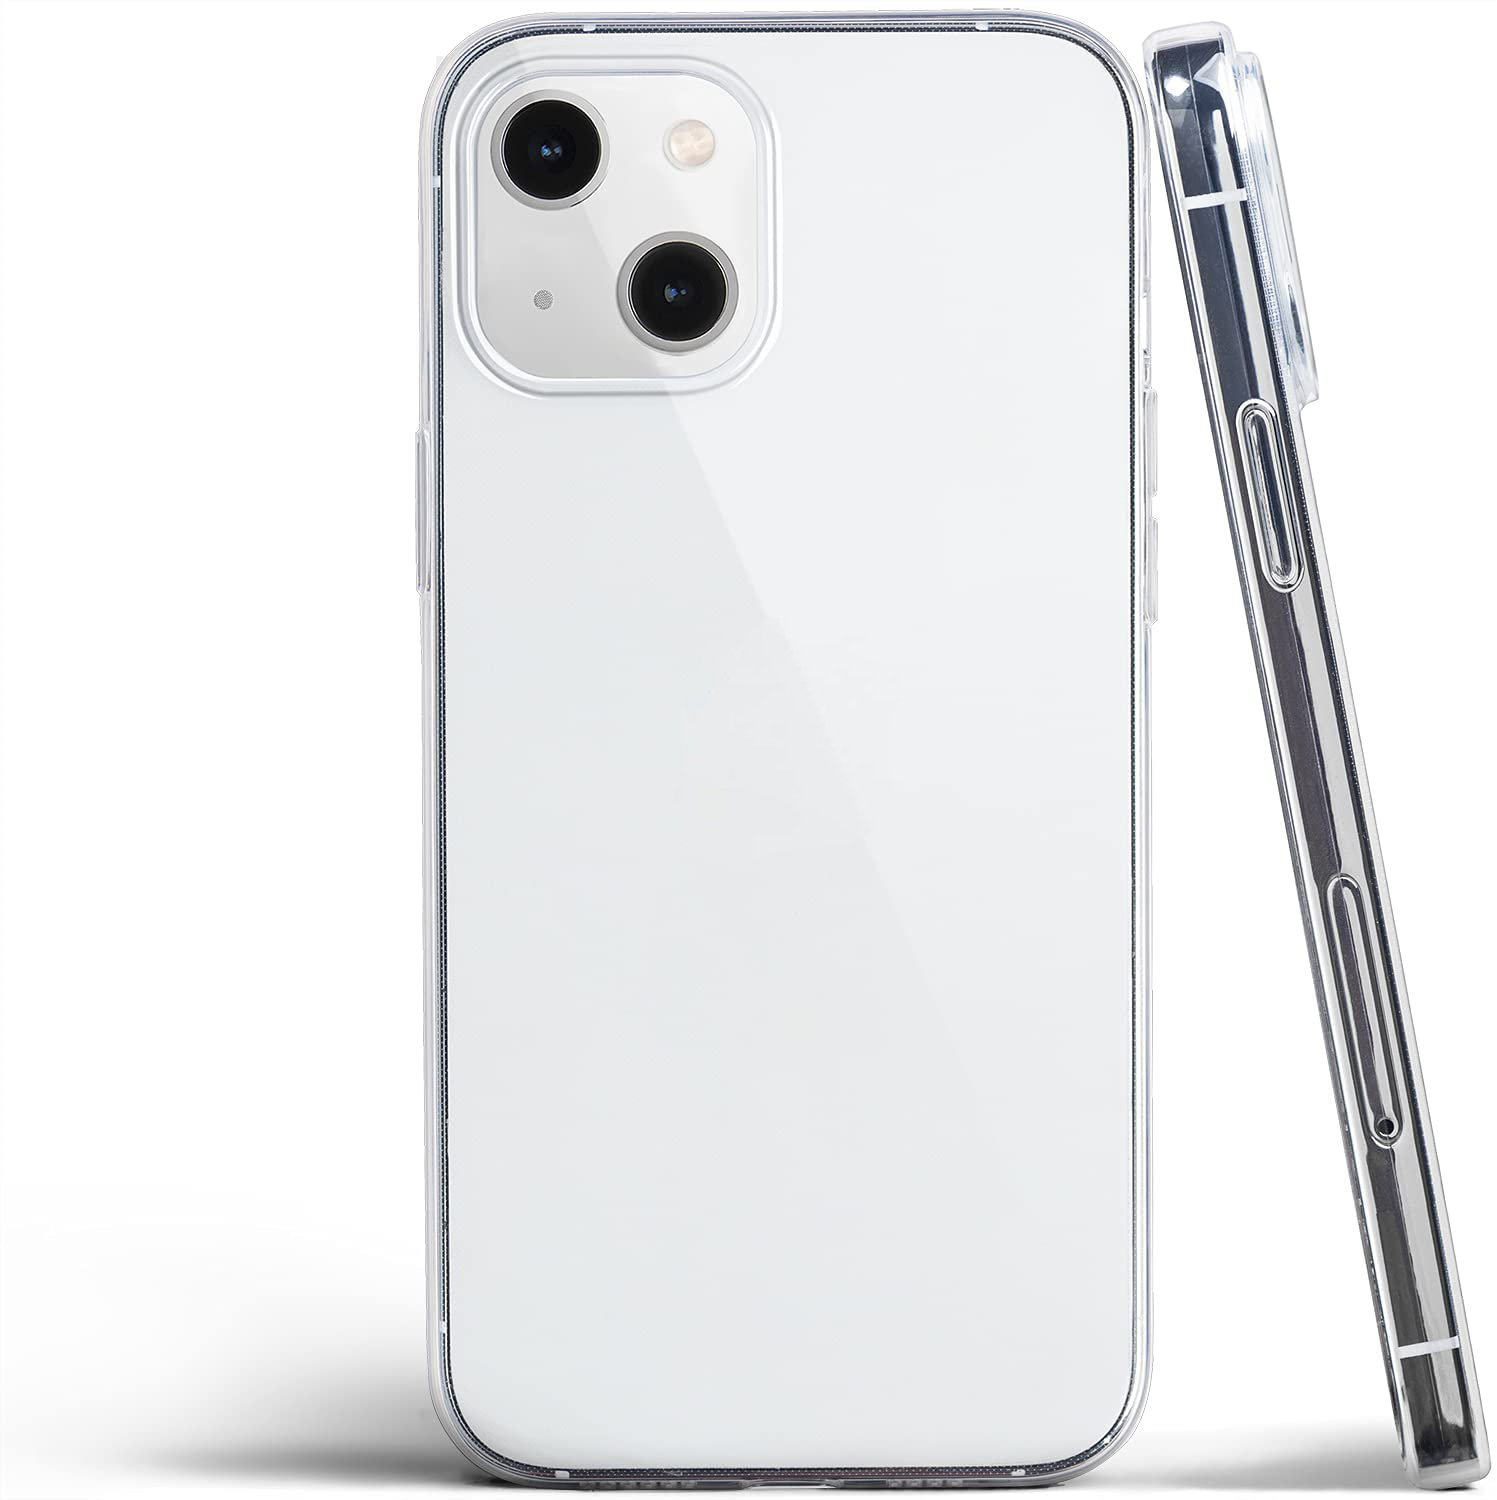 Ốp lưng silicon dẻo trong suốt cho iPhone 13 6.1 inch hiệu Ultra Thin siêu mỏng 0.6mm - Hàng nhập khẩu